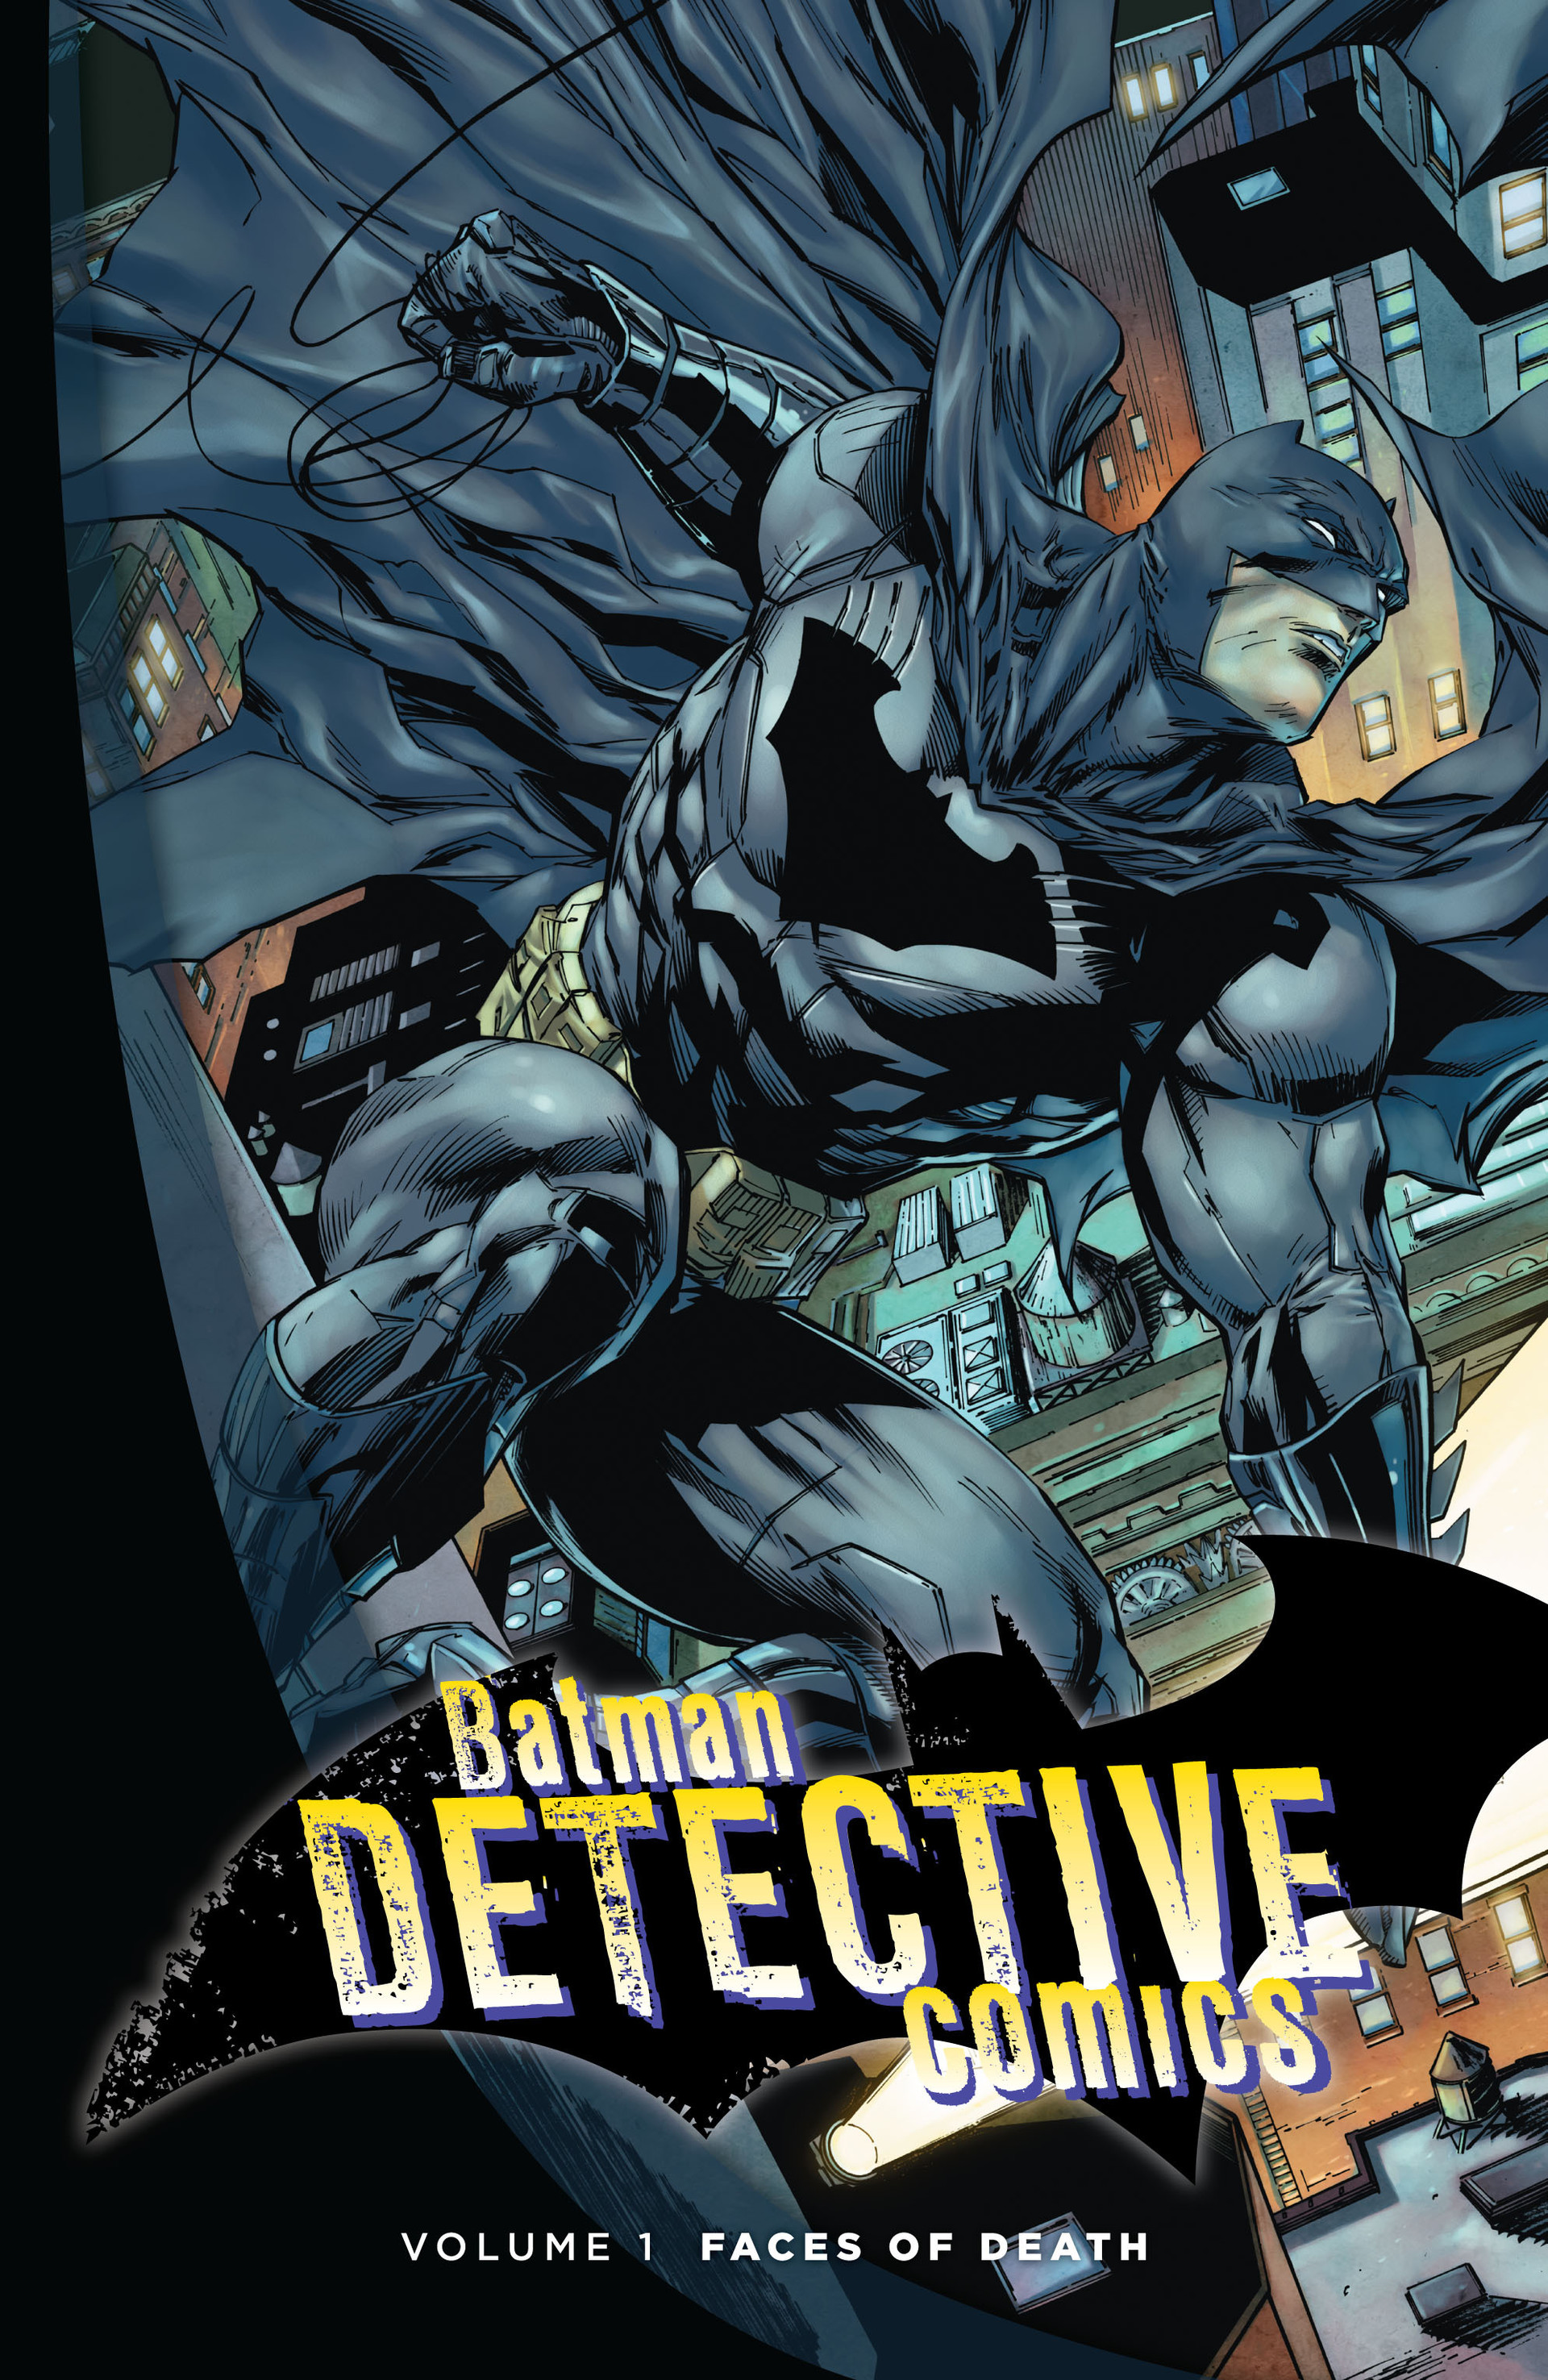 Read online Batman: Detective Comics comic -  Issue # TPB 1 - 2